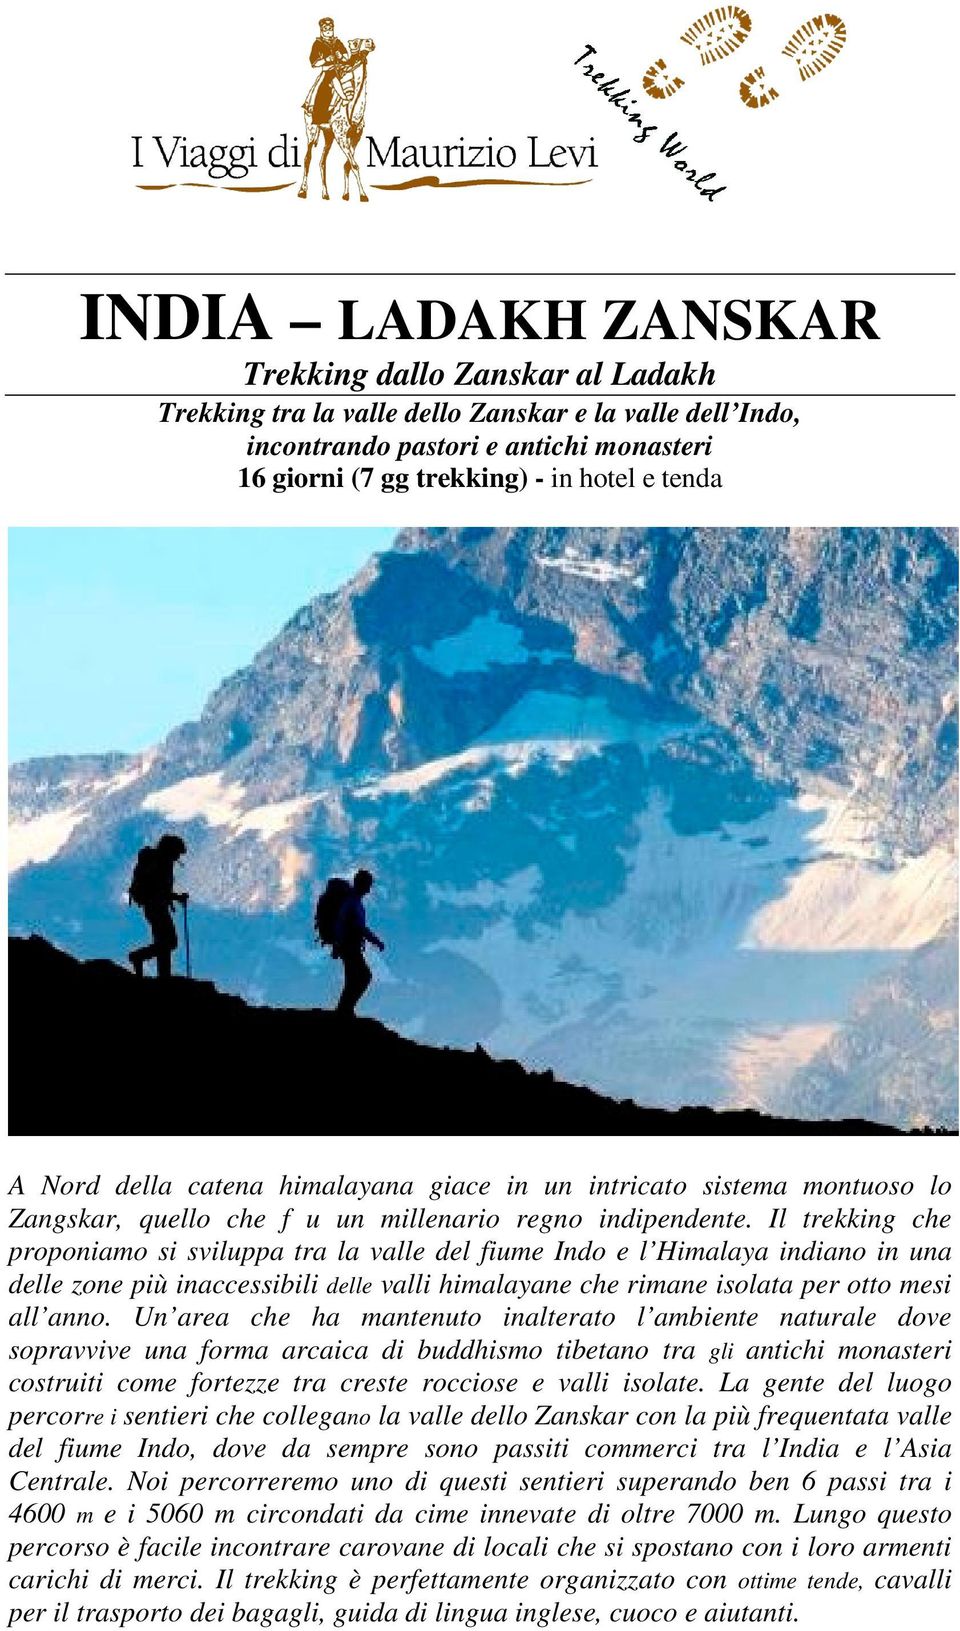 Il trekking che proponiamo si sviluppa tra la valle del fiume Indo e l Himalaya indiano in una delle zone più inaccessibili delle valli himalayane che rimane isolata per otto mesi all anno.